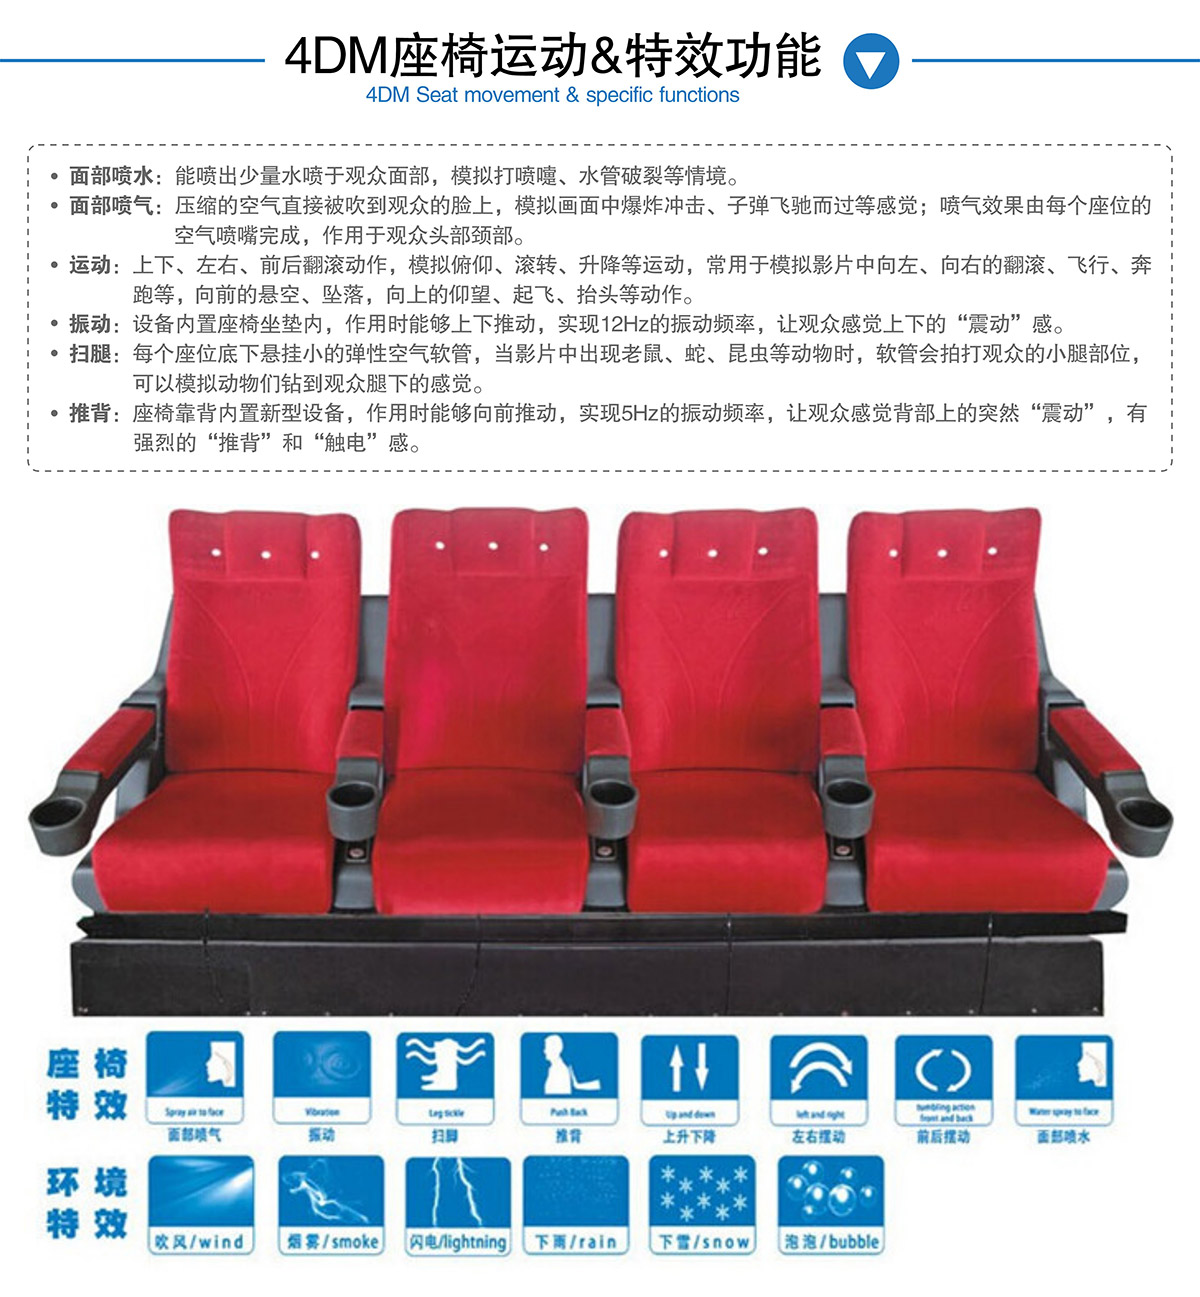 互动电影4DM座椅运动和特效功能.jpg